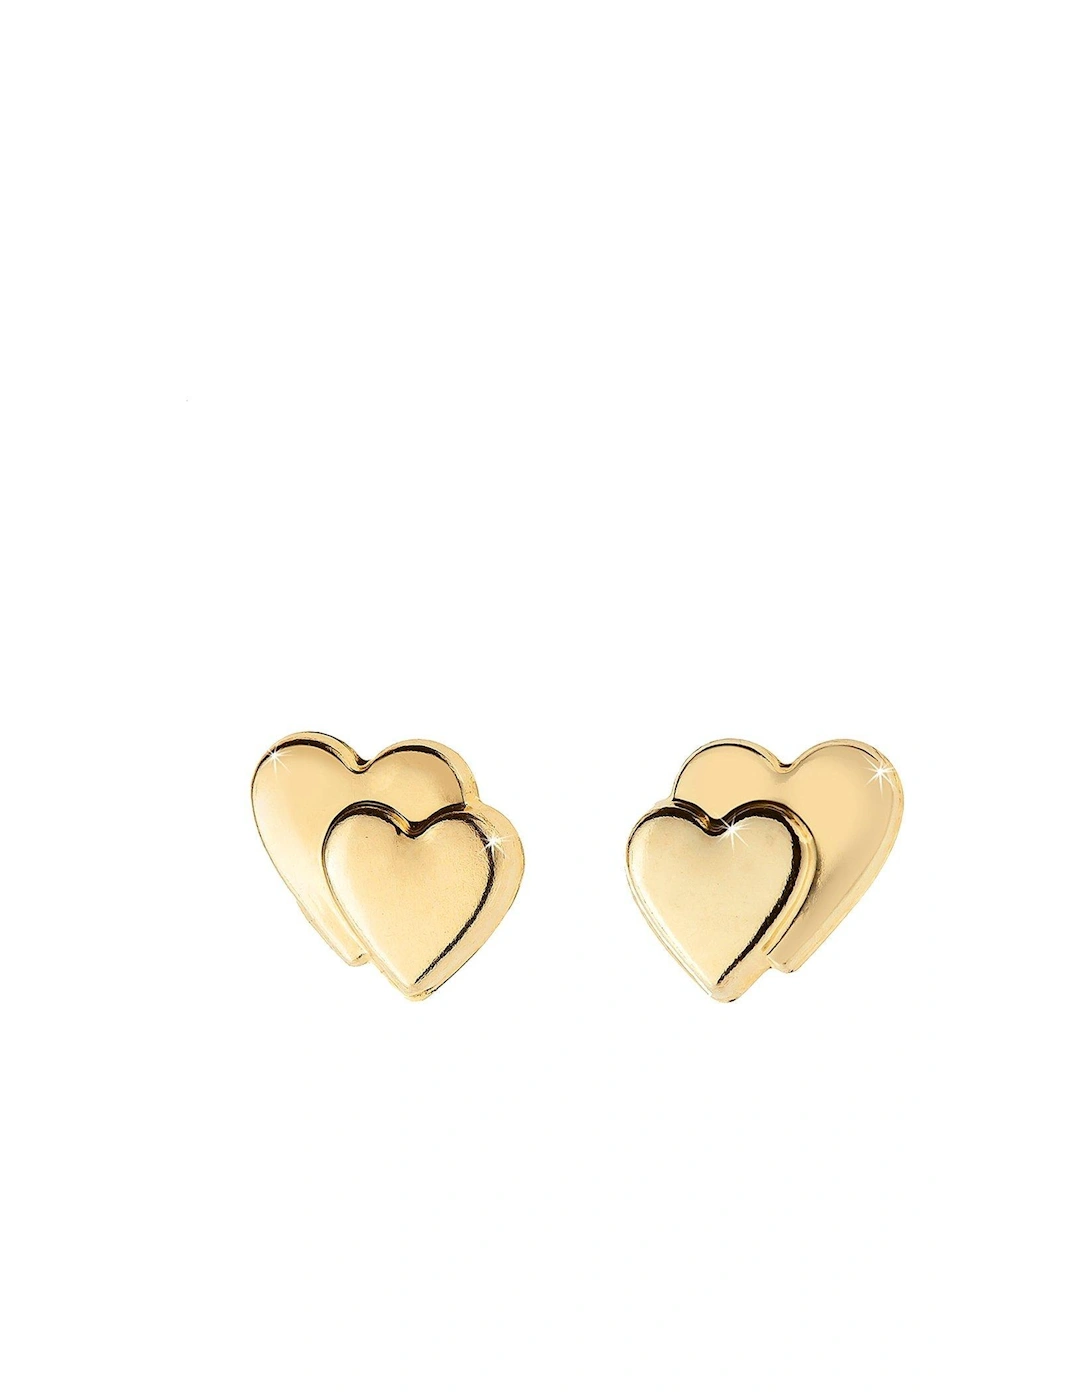 9 Carat Gold Heart on Heart Earrings in Red Heart Box, 3 of 2